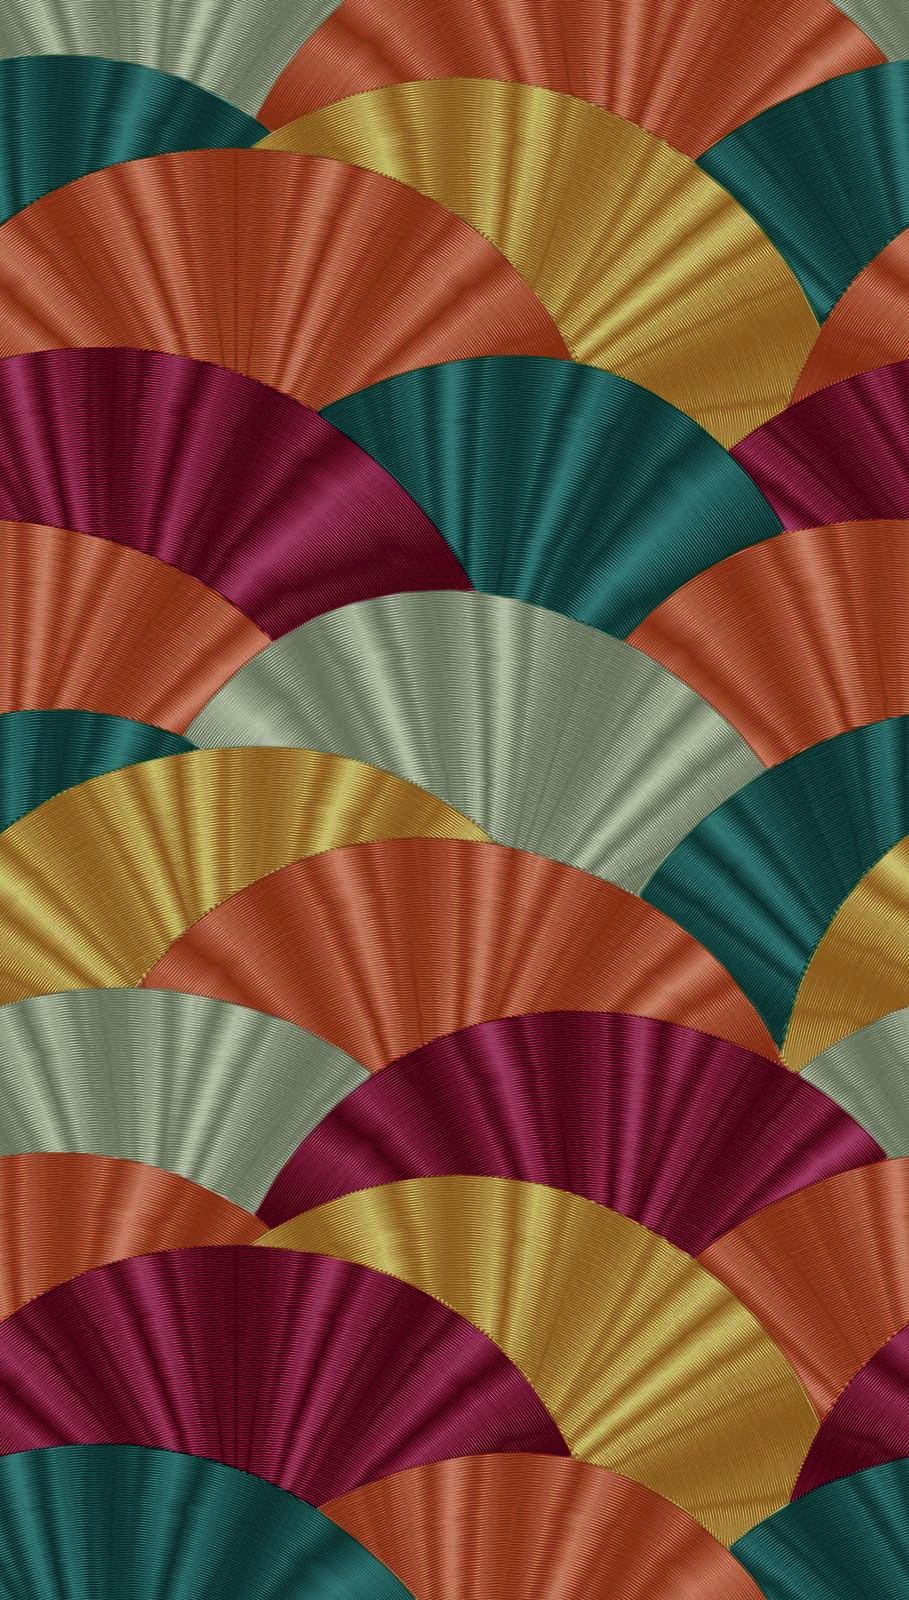             Carta da parati colorata in tessuto non tessuto con motivo a ventaglio di grandi dimensioni - multicolore, rosso, turchese
        